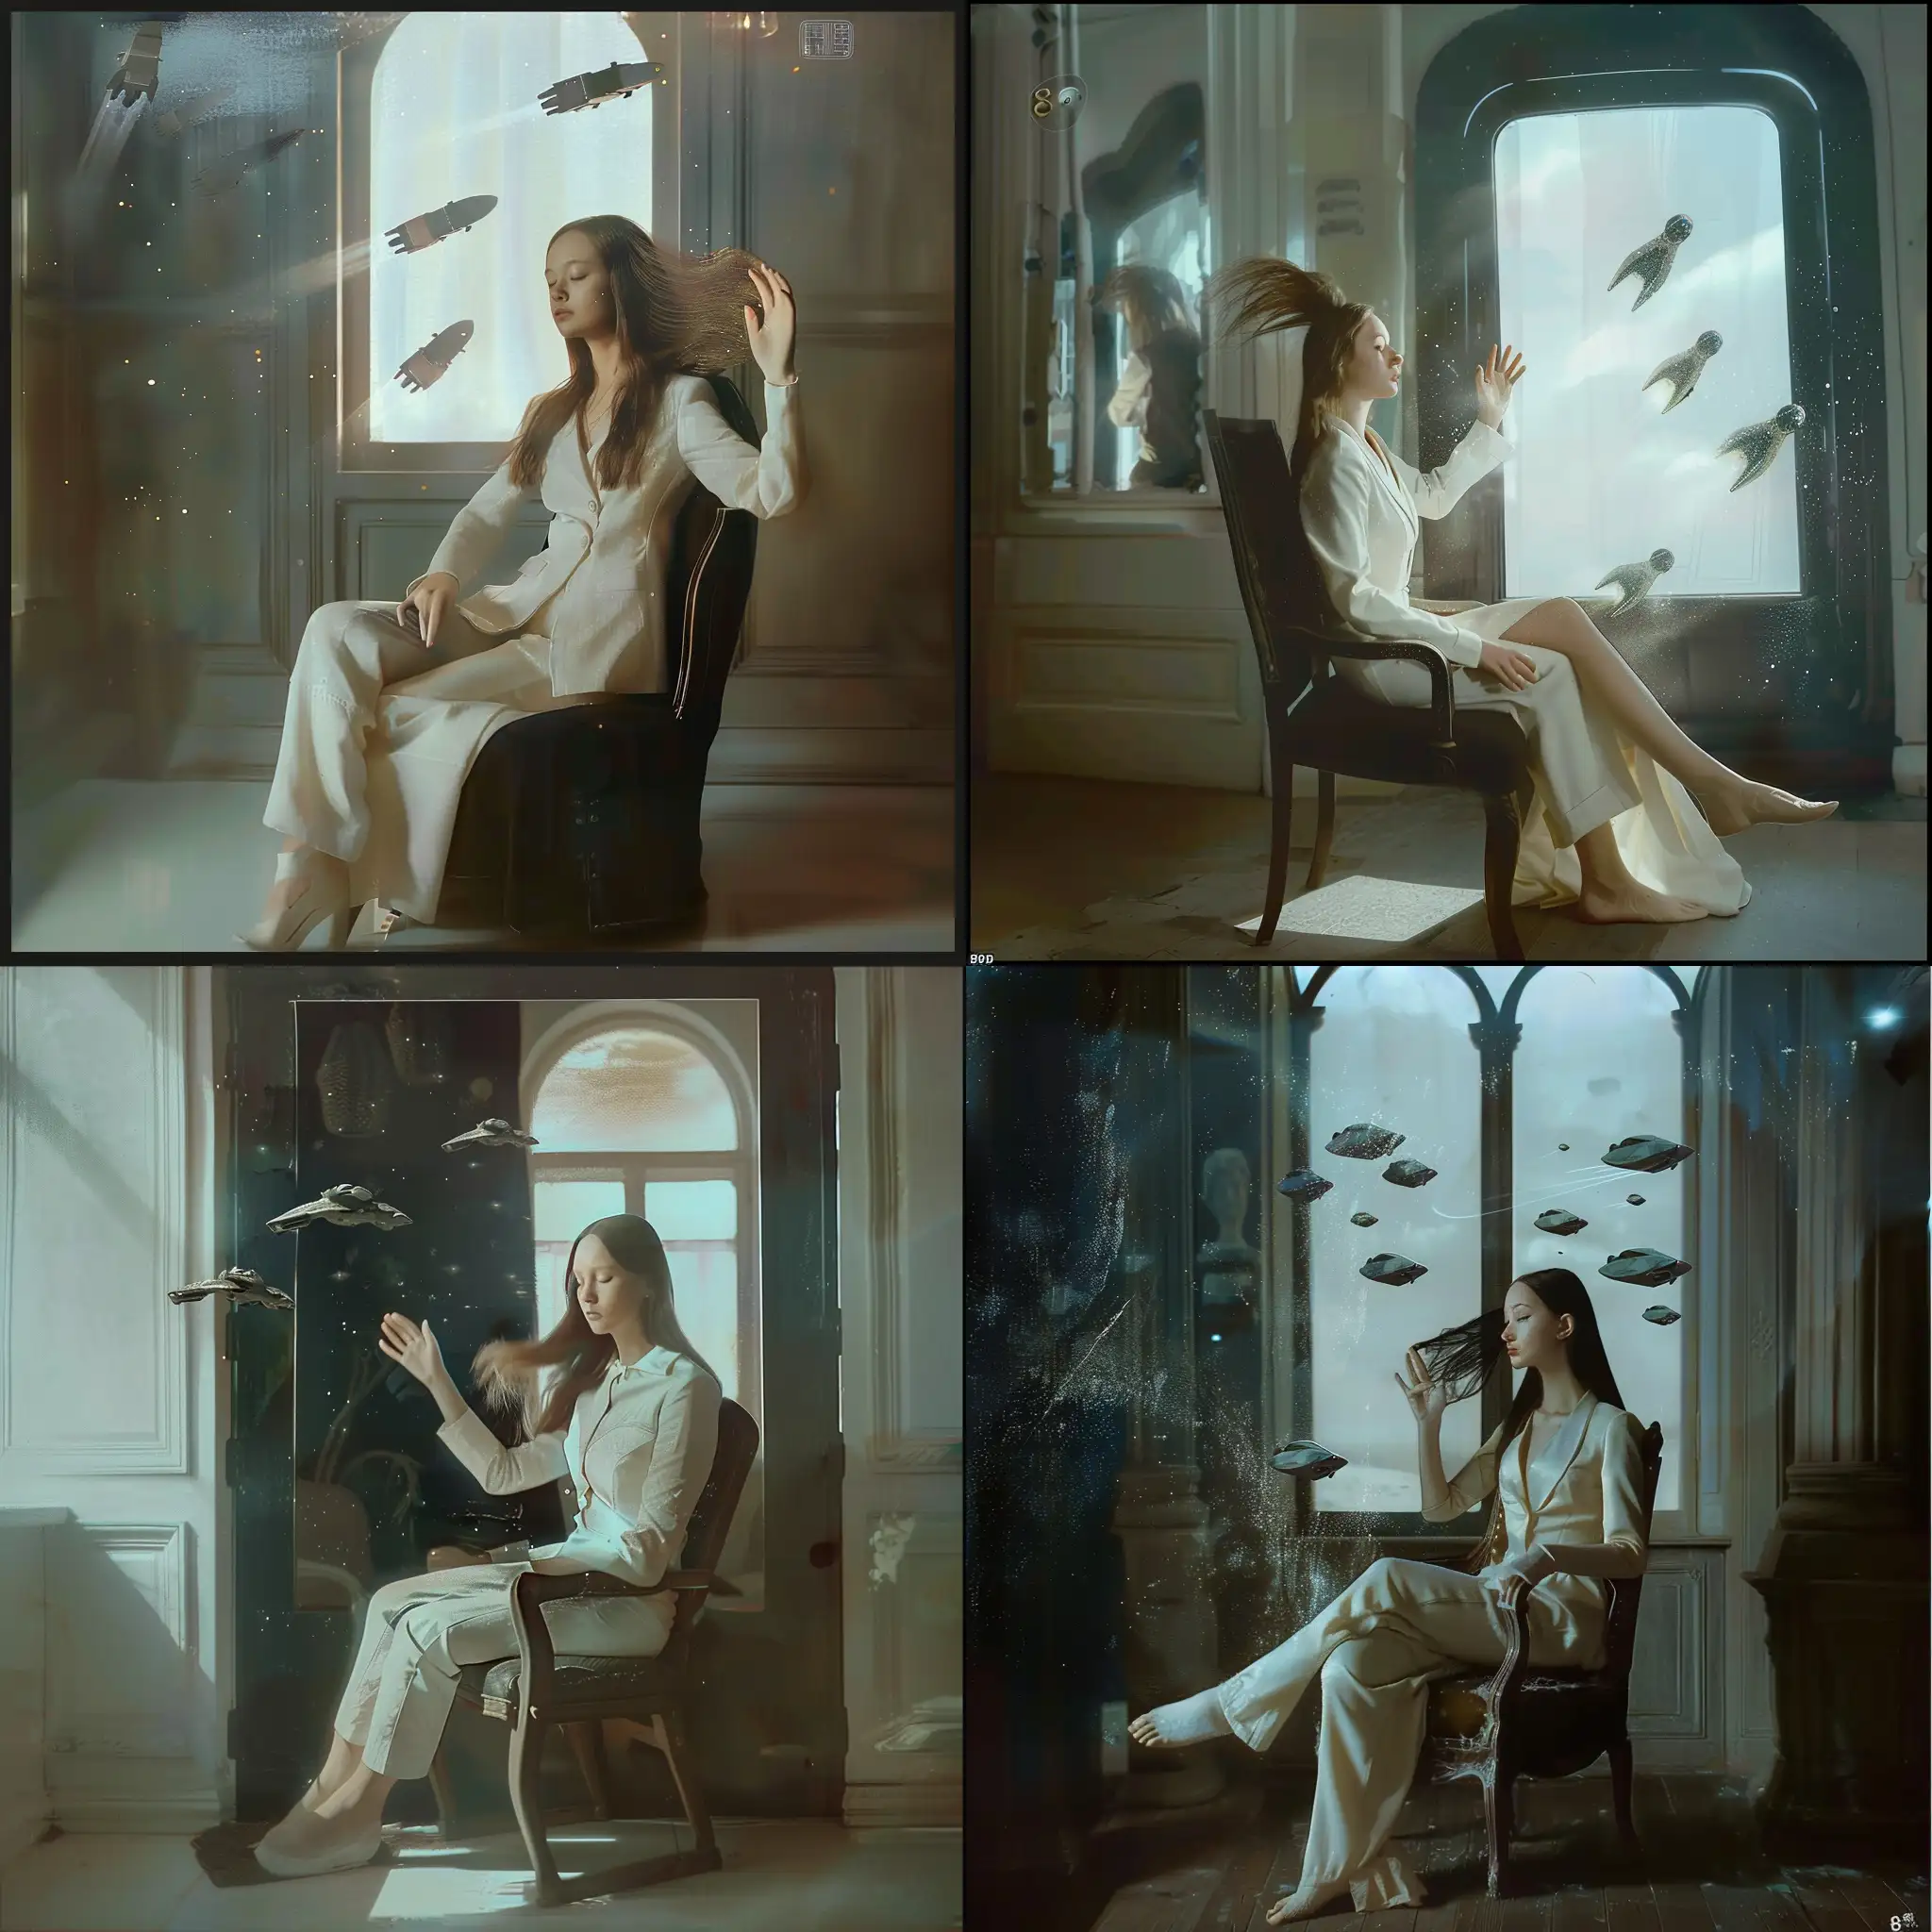 Фантастическая планета в стилистике фильма Дюна, девушка сидит  к комнате в белом костюме, развевающиеся волосы, в открытом окне проплывают космические корабли, 8k, плёночная фотография, ультодетализация, рассеяние света, резкий фокус, высокая детализация 